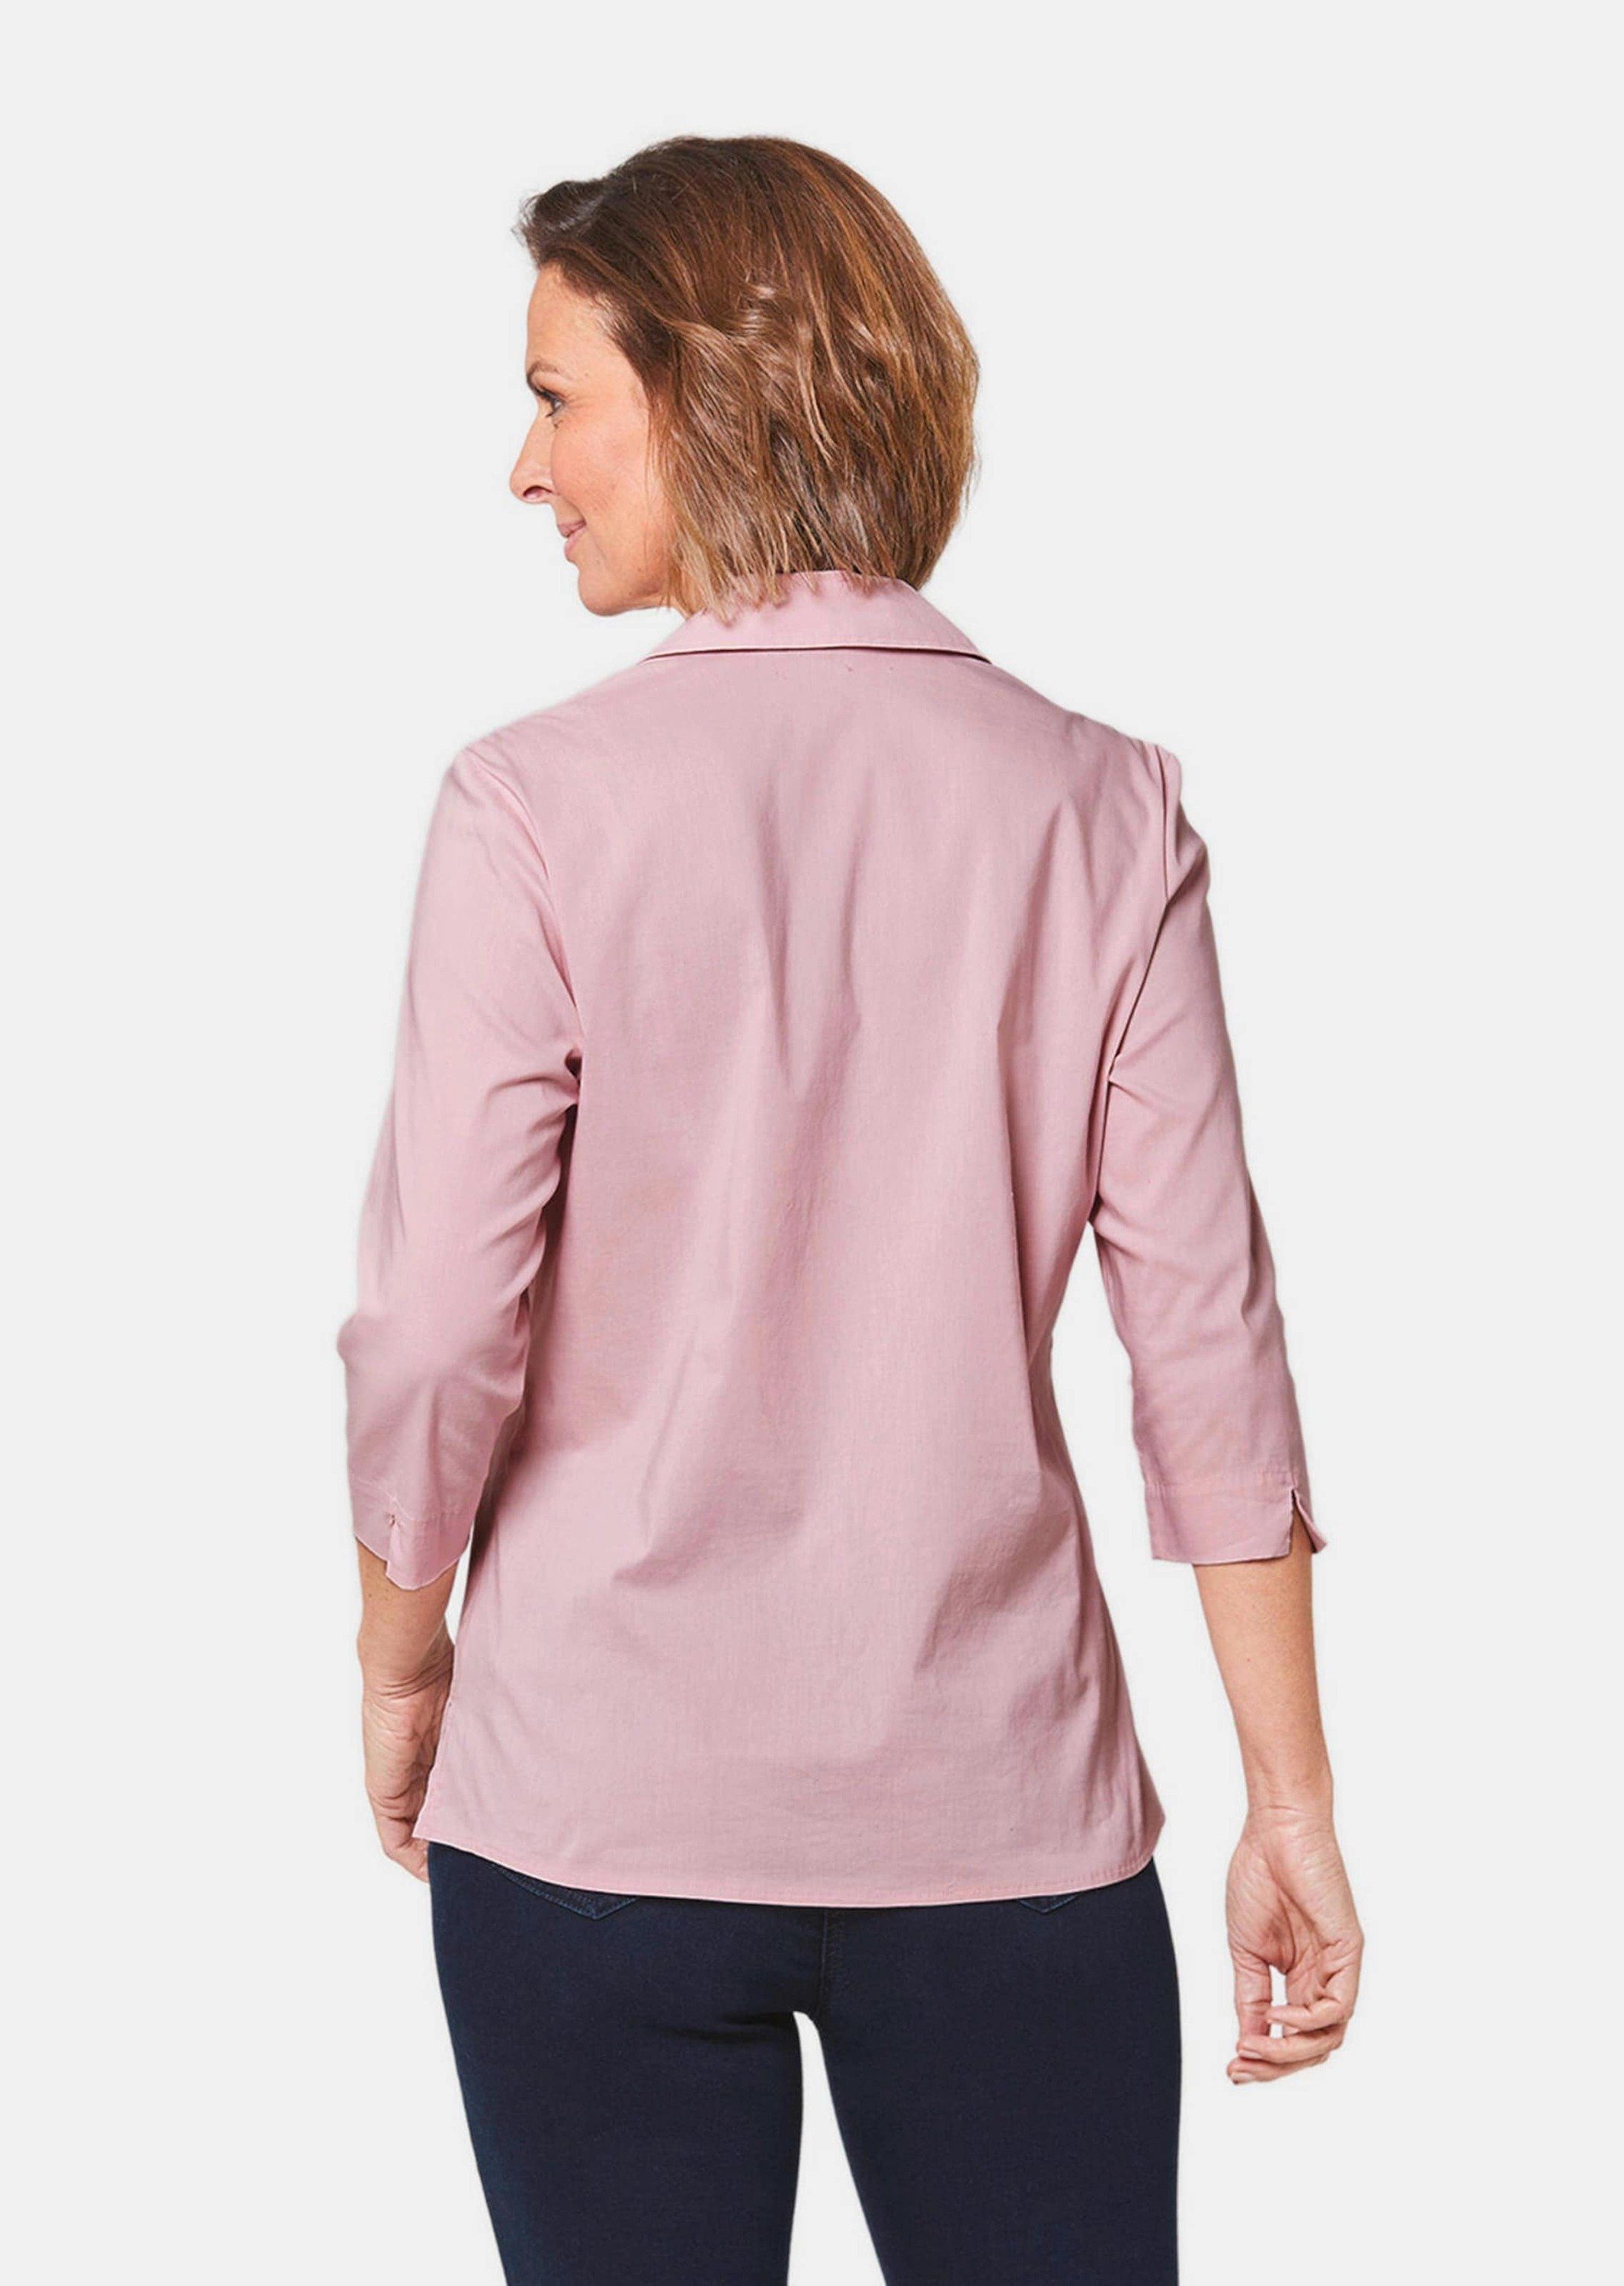 GOLDNER Hemdbluse Kurzgröße: rosé Bluse Stretchbequeme Baumwolle mit